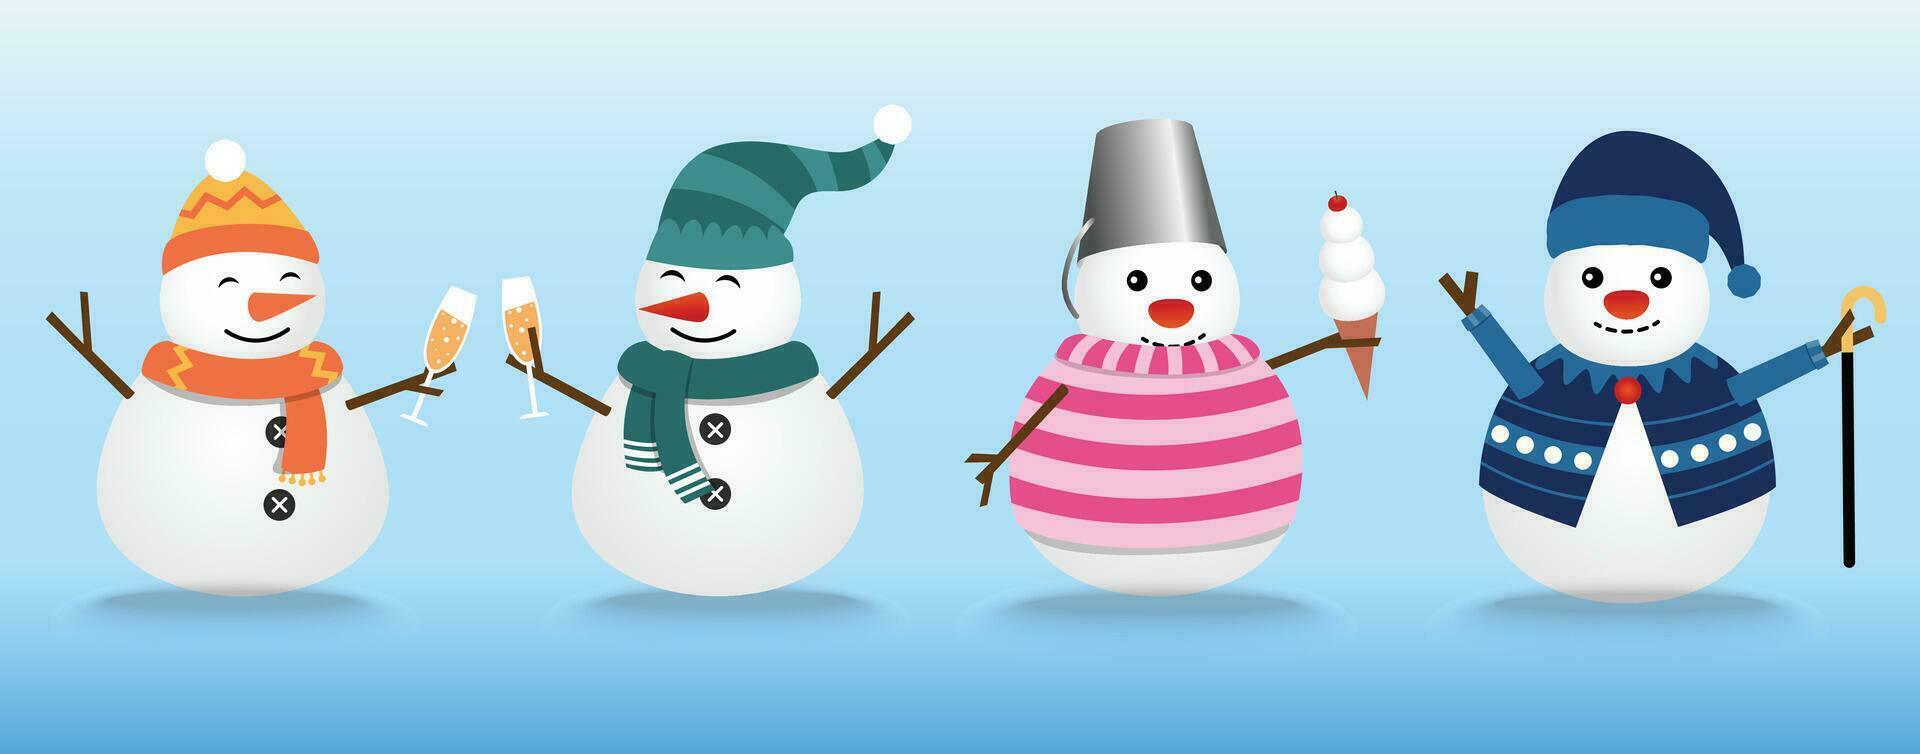 das Sammlung von Schneemänner trägt das Winter Thema. Grafik Ressource Über Winter und Weihnachten zum Inhalt, Schneemann mit Sekt, Eis Creme, und Stock. Vektor Illustration.